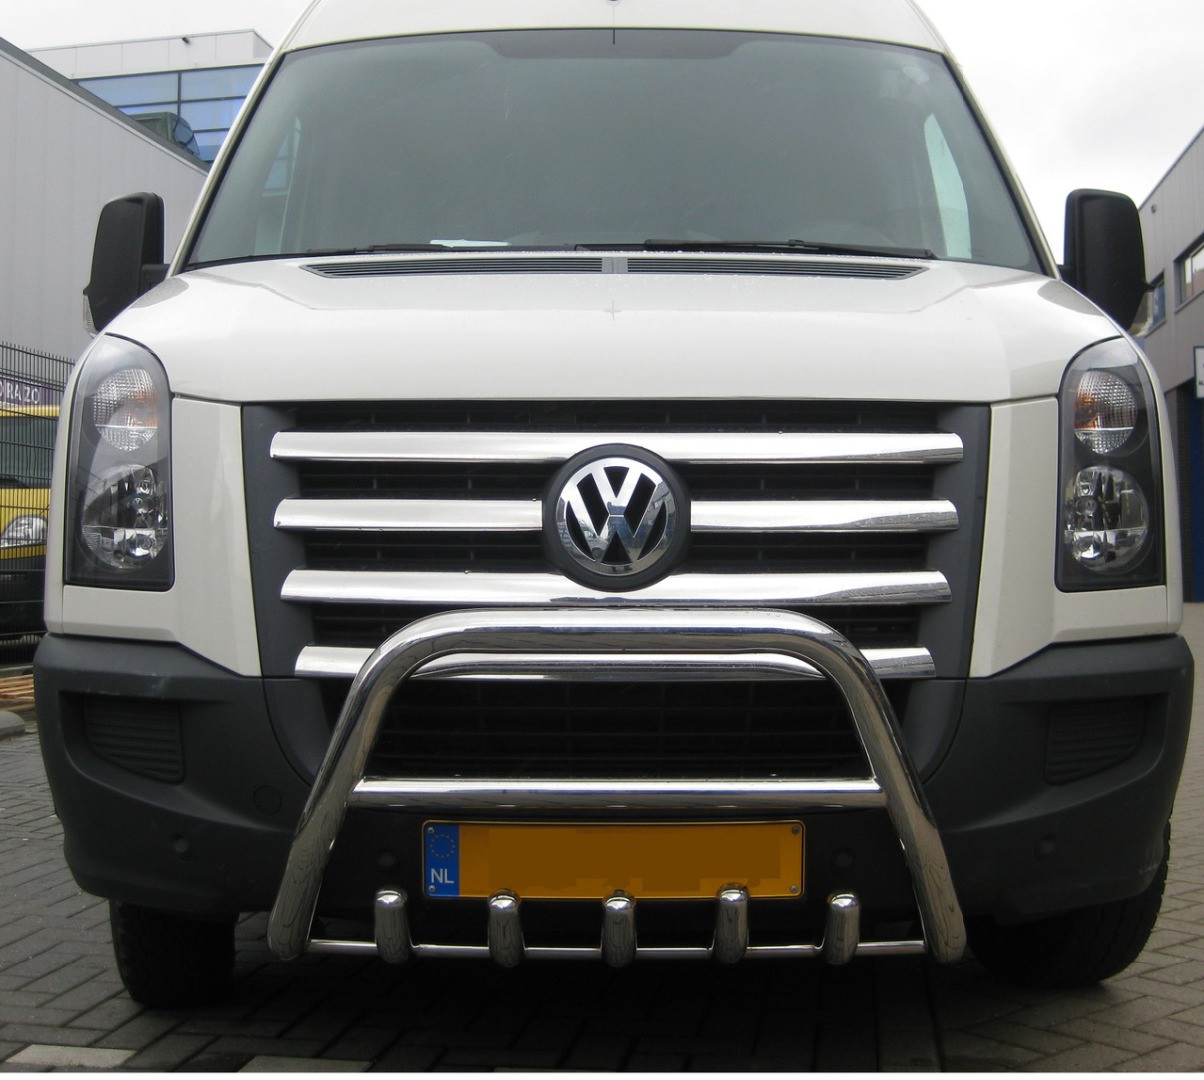 Защита бампера(Дуга) Volkswagen Crafter 2006-2011